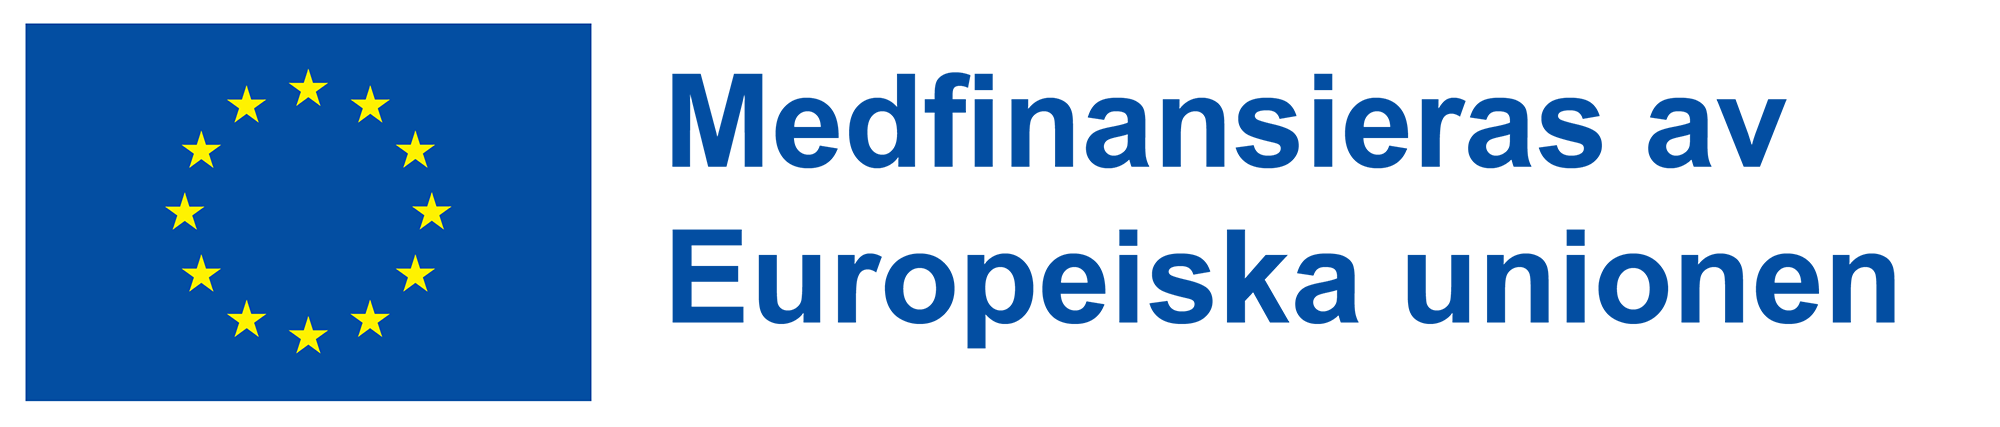 EU-logotypen och text medfinansieras av Europeiska unionen.